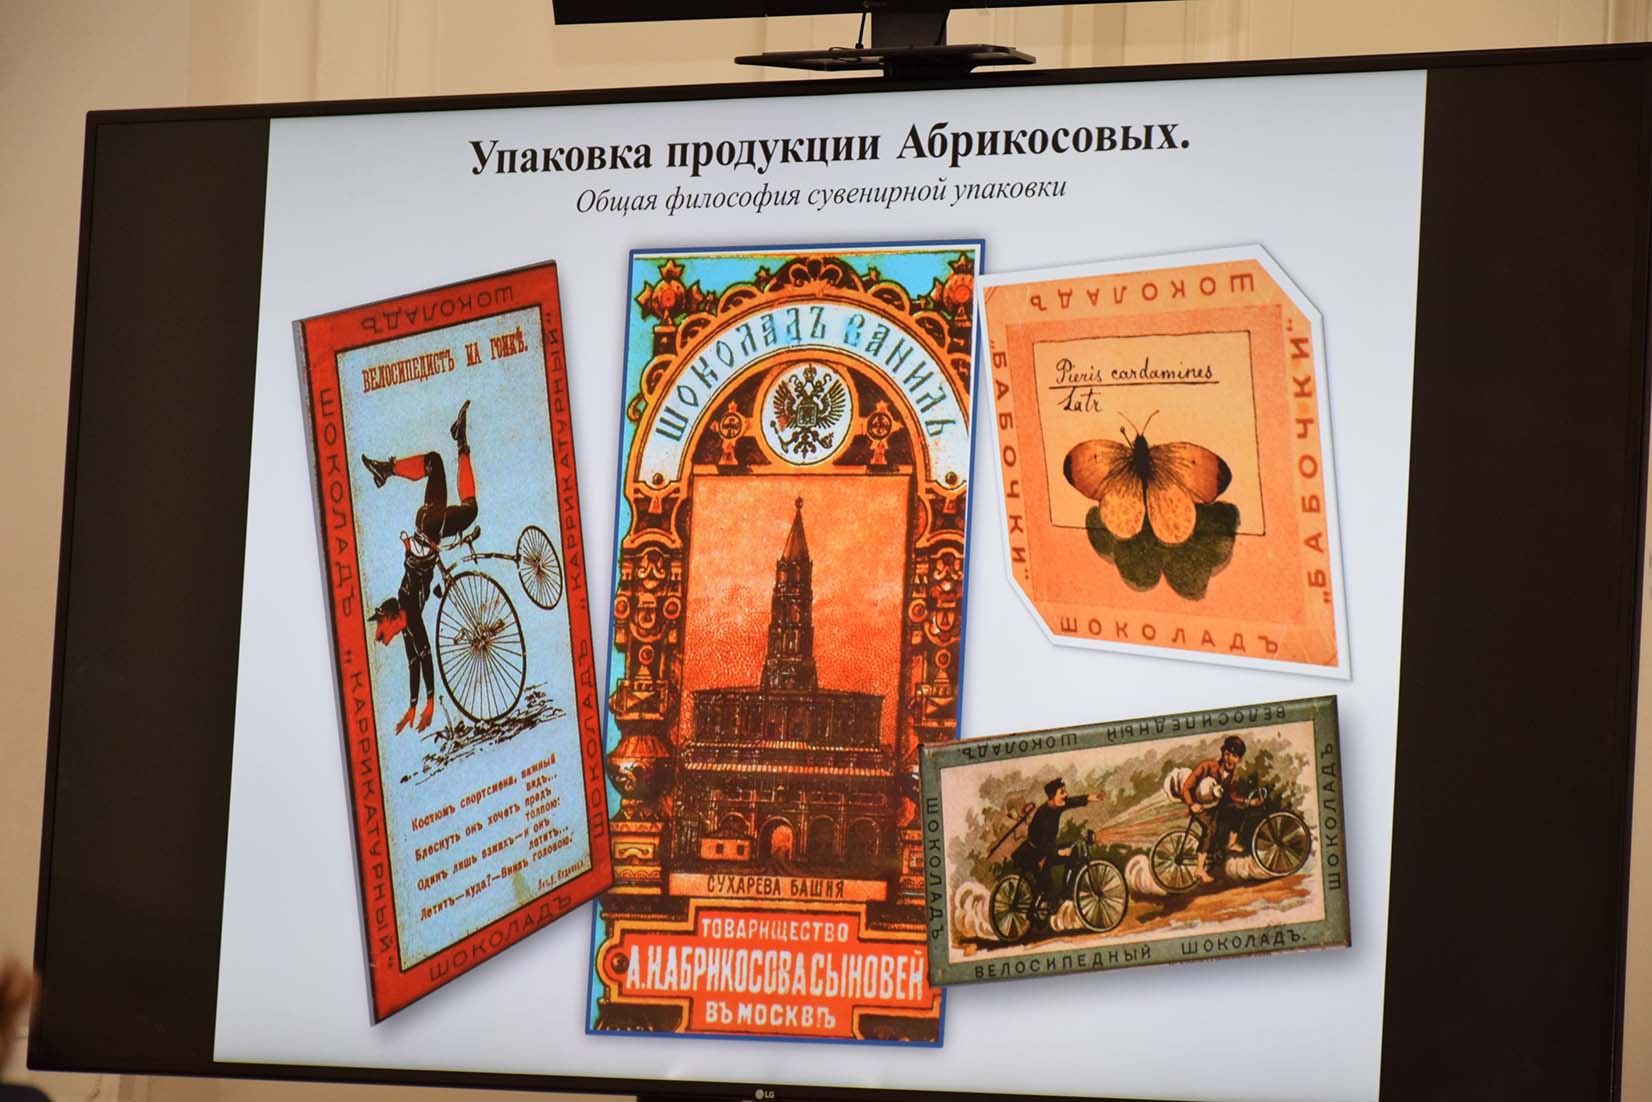 Круглый стол, посвященный 100-летию РГБИ, прошел в Российской академии художеств 